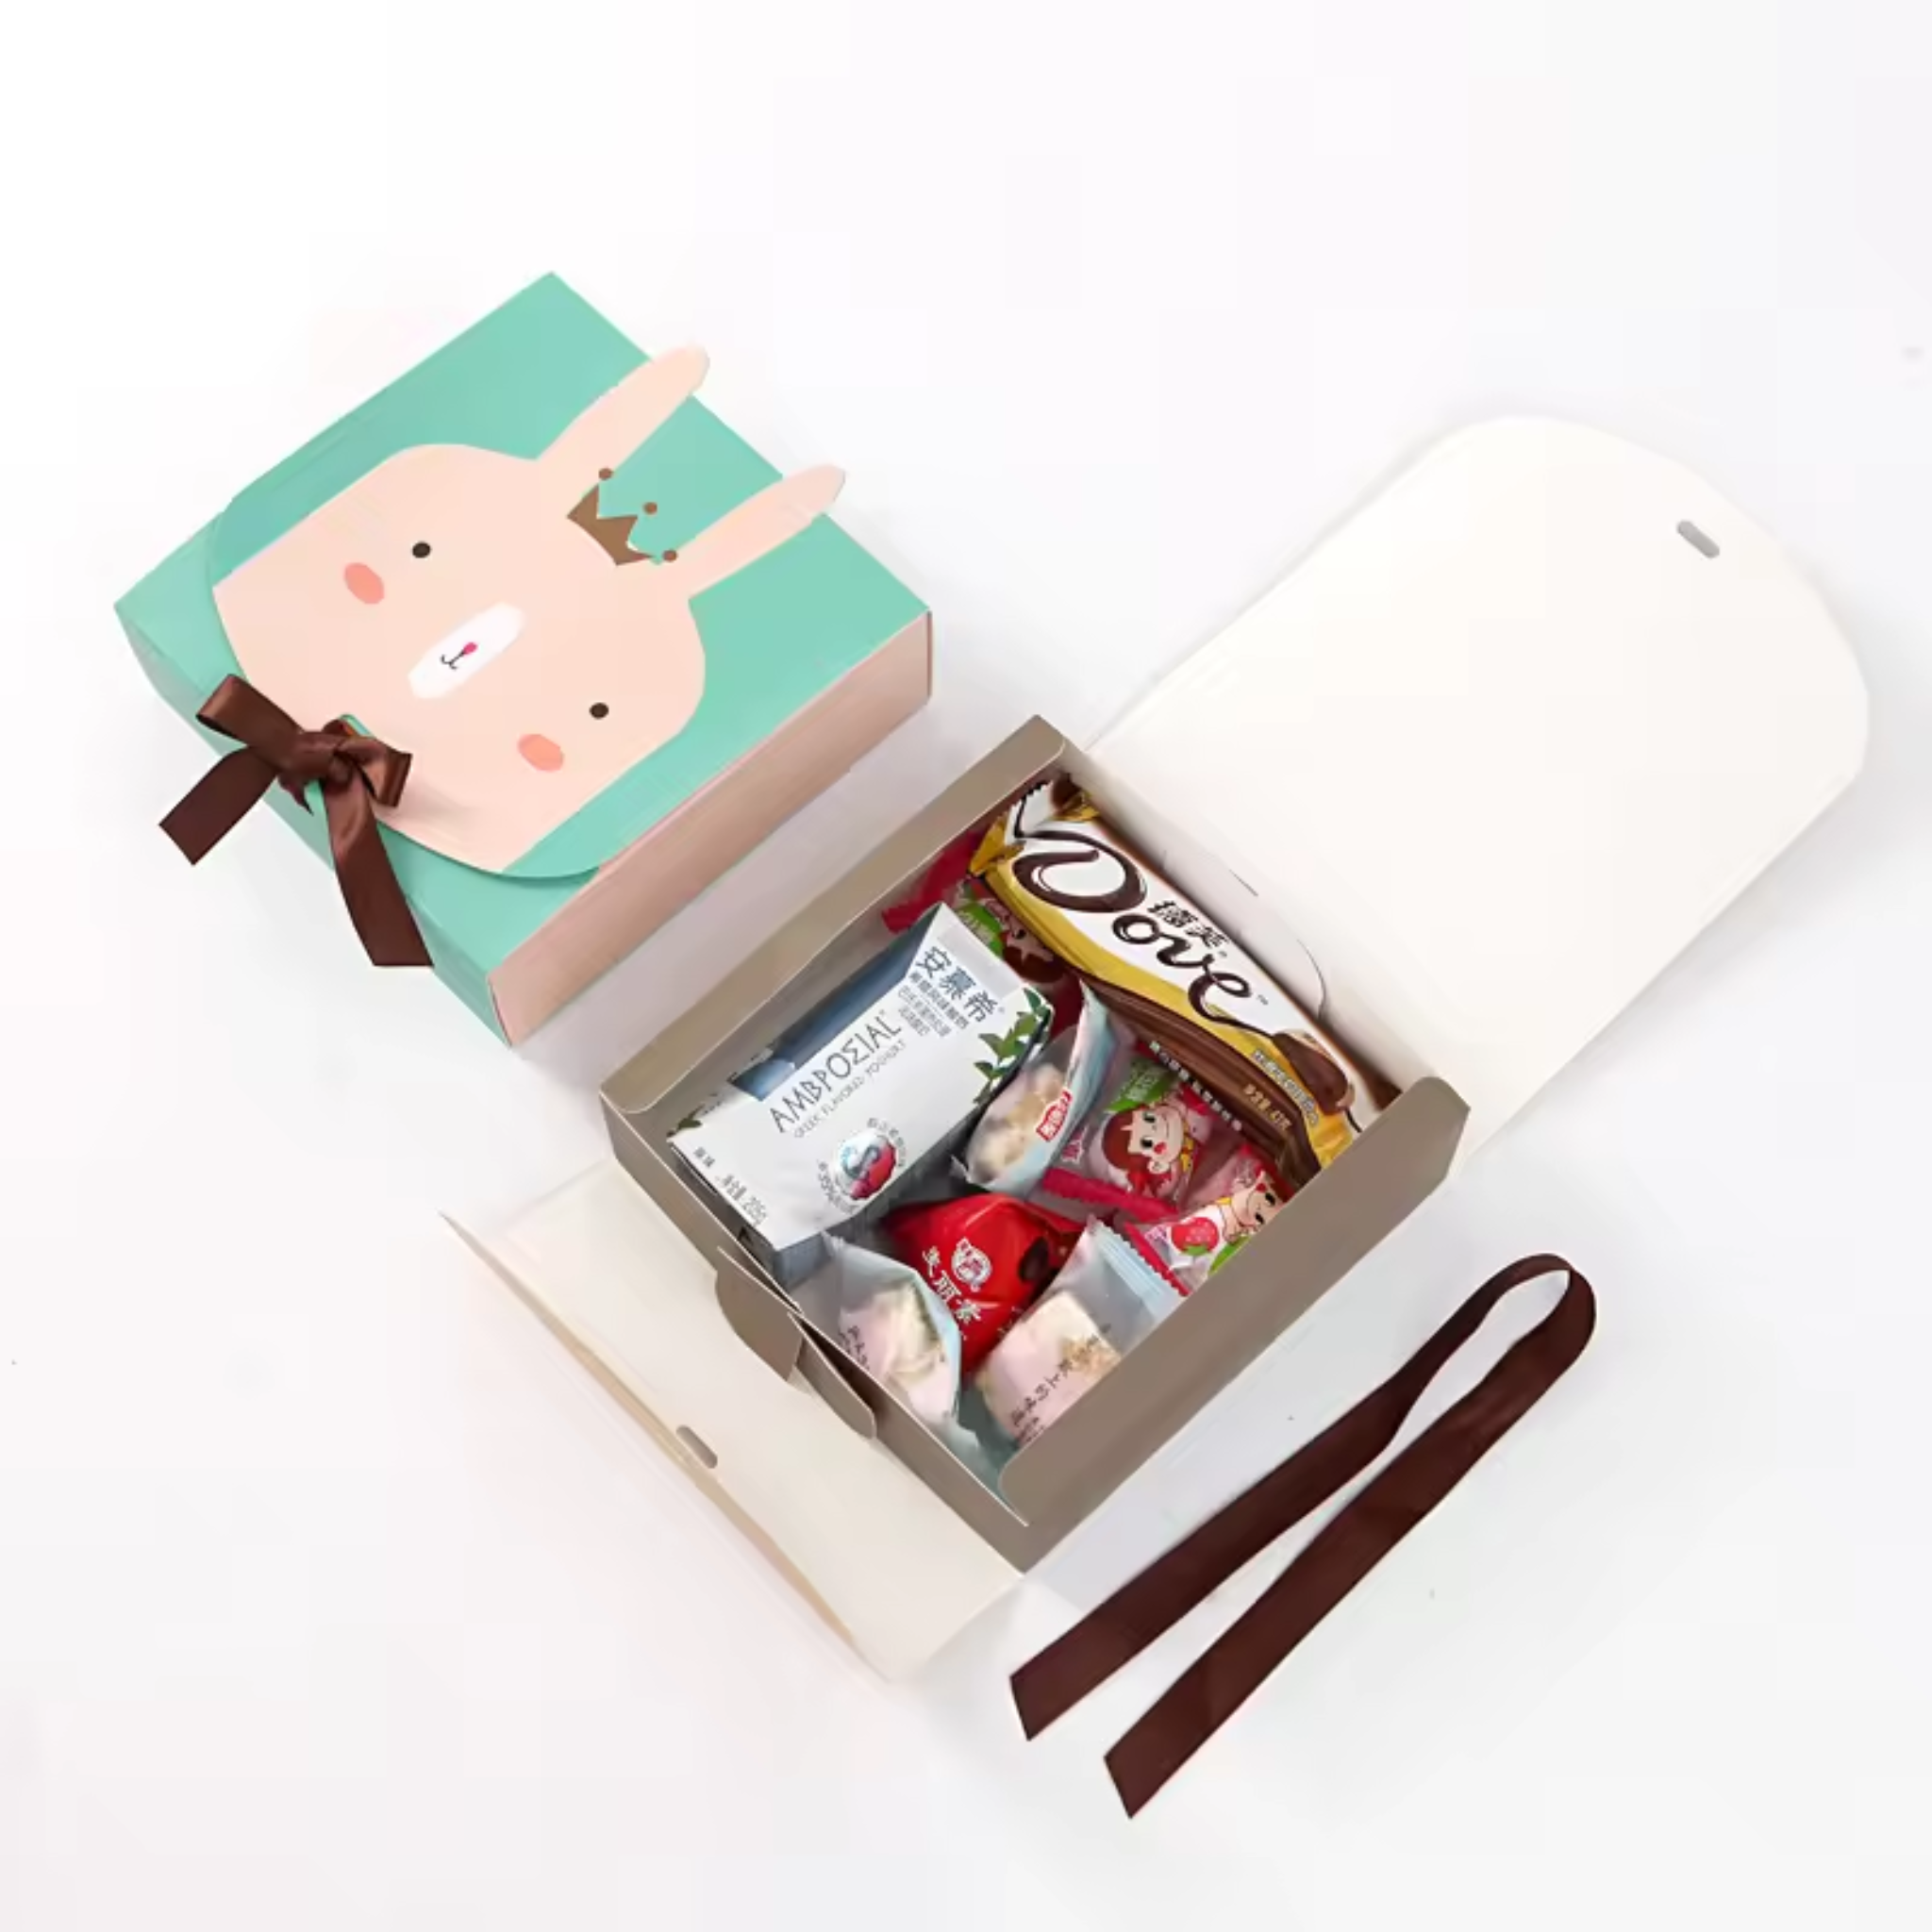 Safari Animal Themed Candy Gift Boxes Set